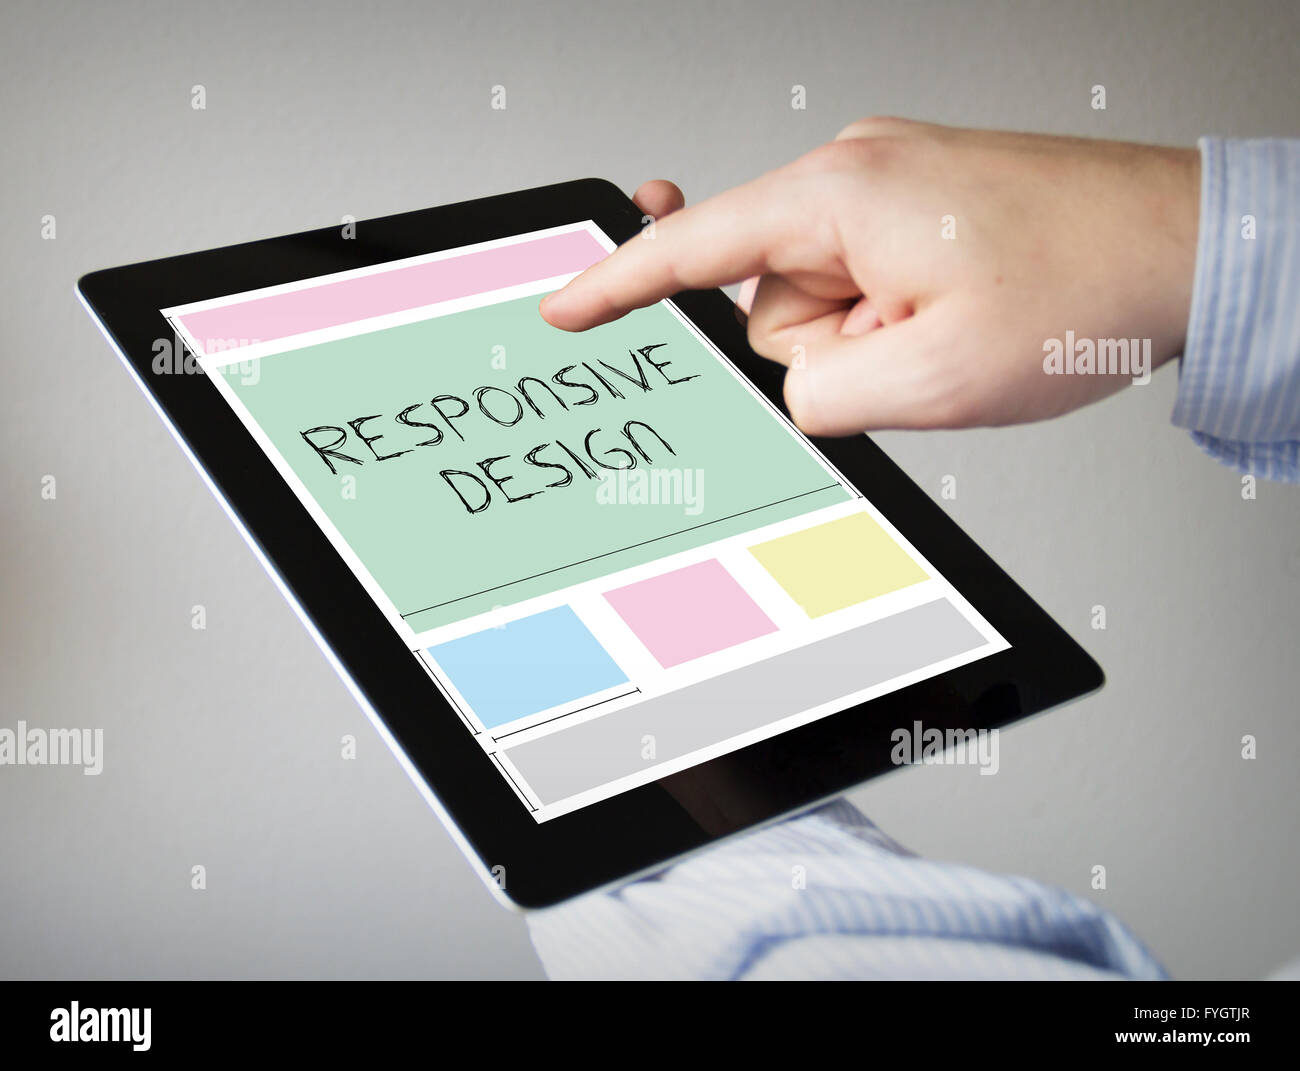 Nouvelles technologies concept : les mains à l'écran tactile Tablet avec responsive design wireframe Banque D'Images